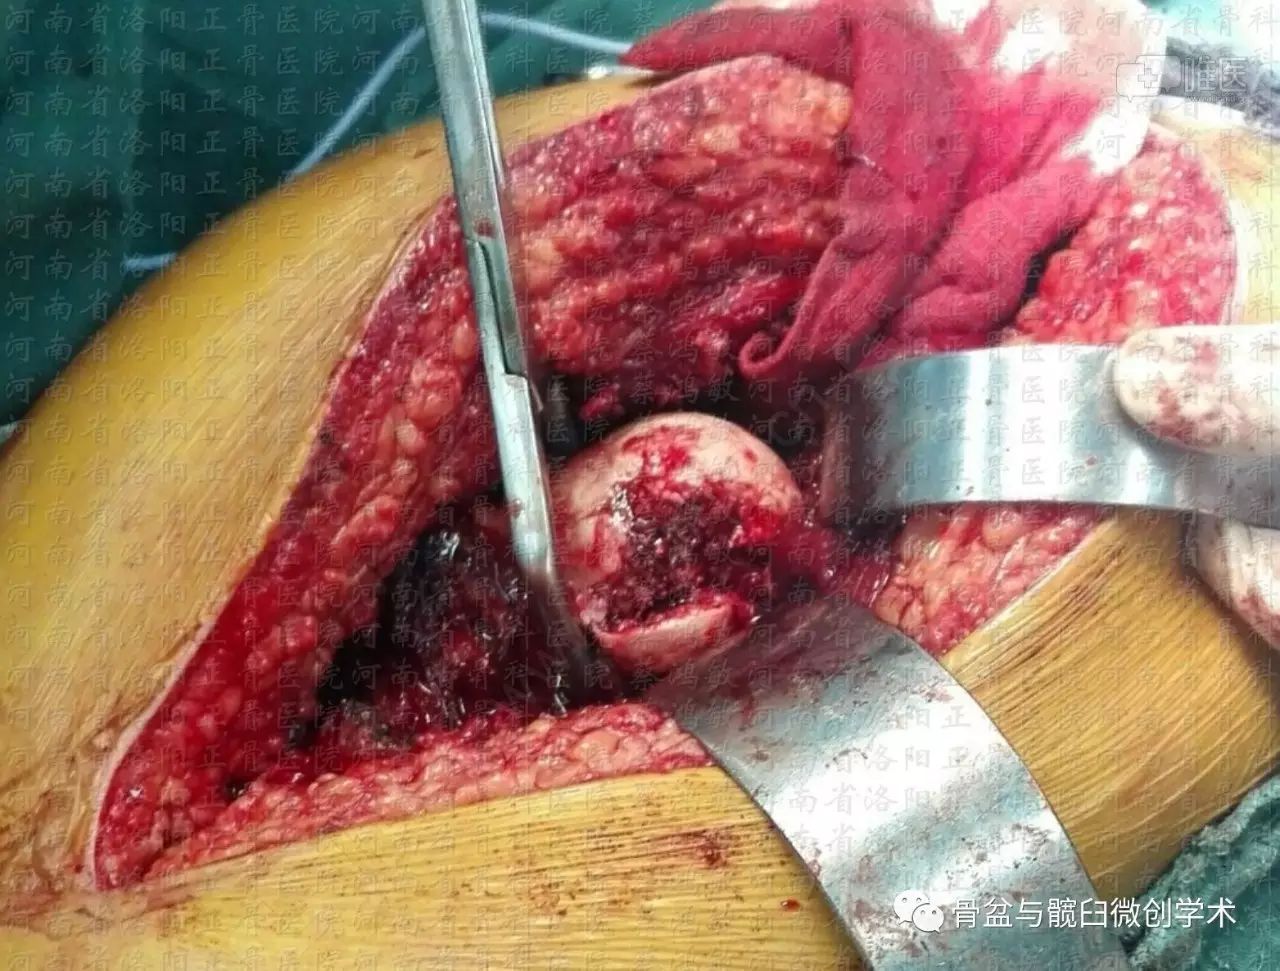 髋臼骨折 股骨头骨折的治疗——kl入路 外科脱位技术